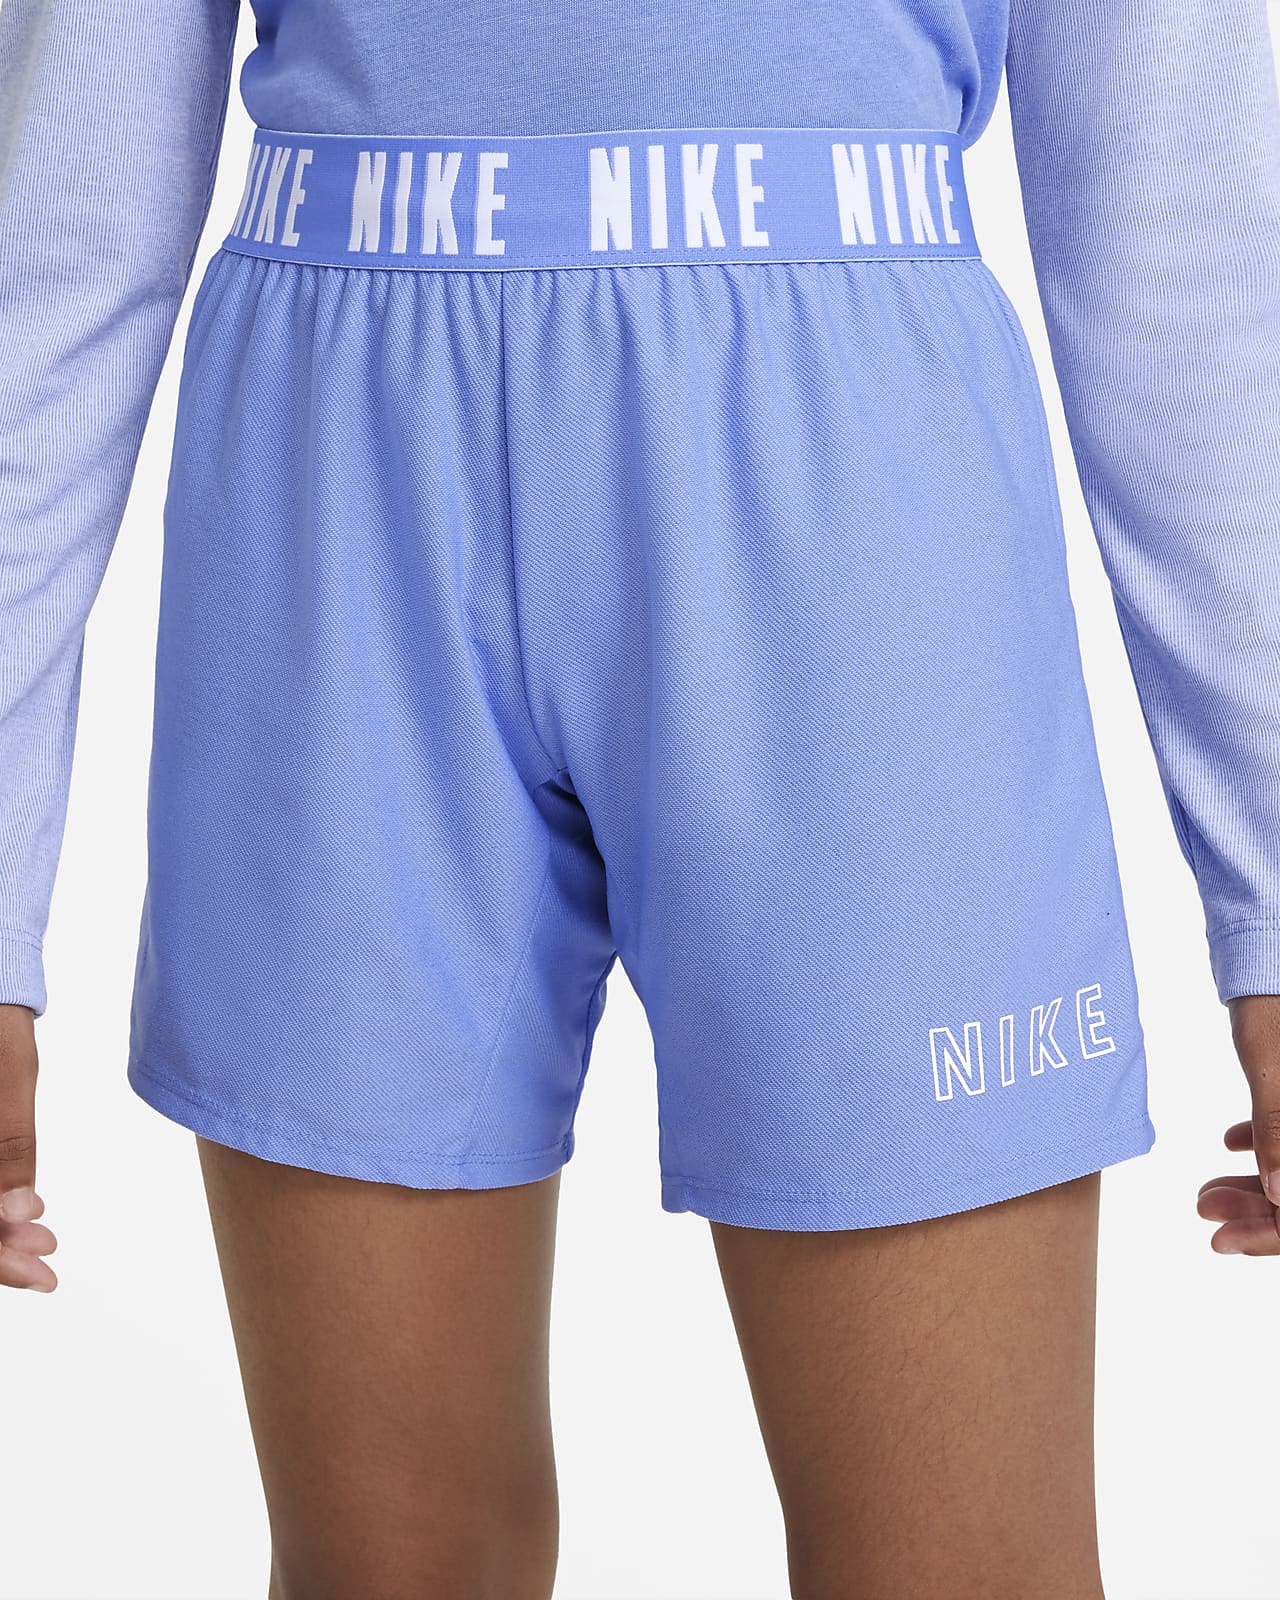 girls blue nike shorts